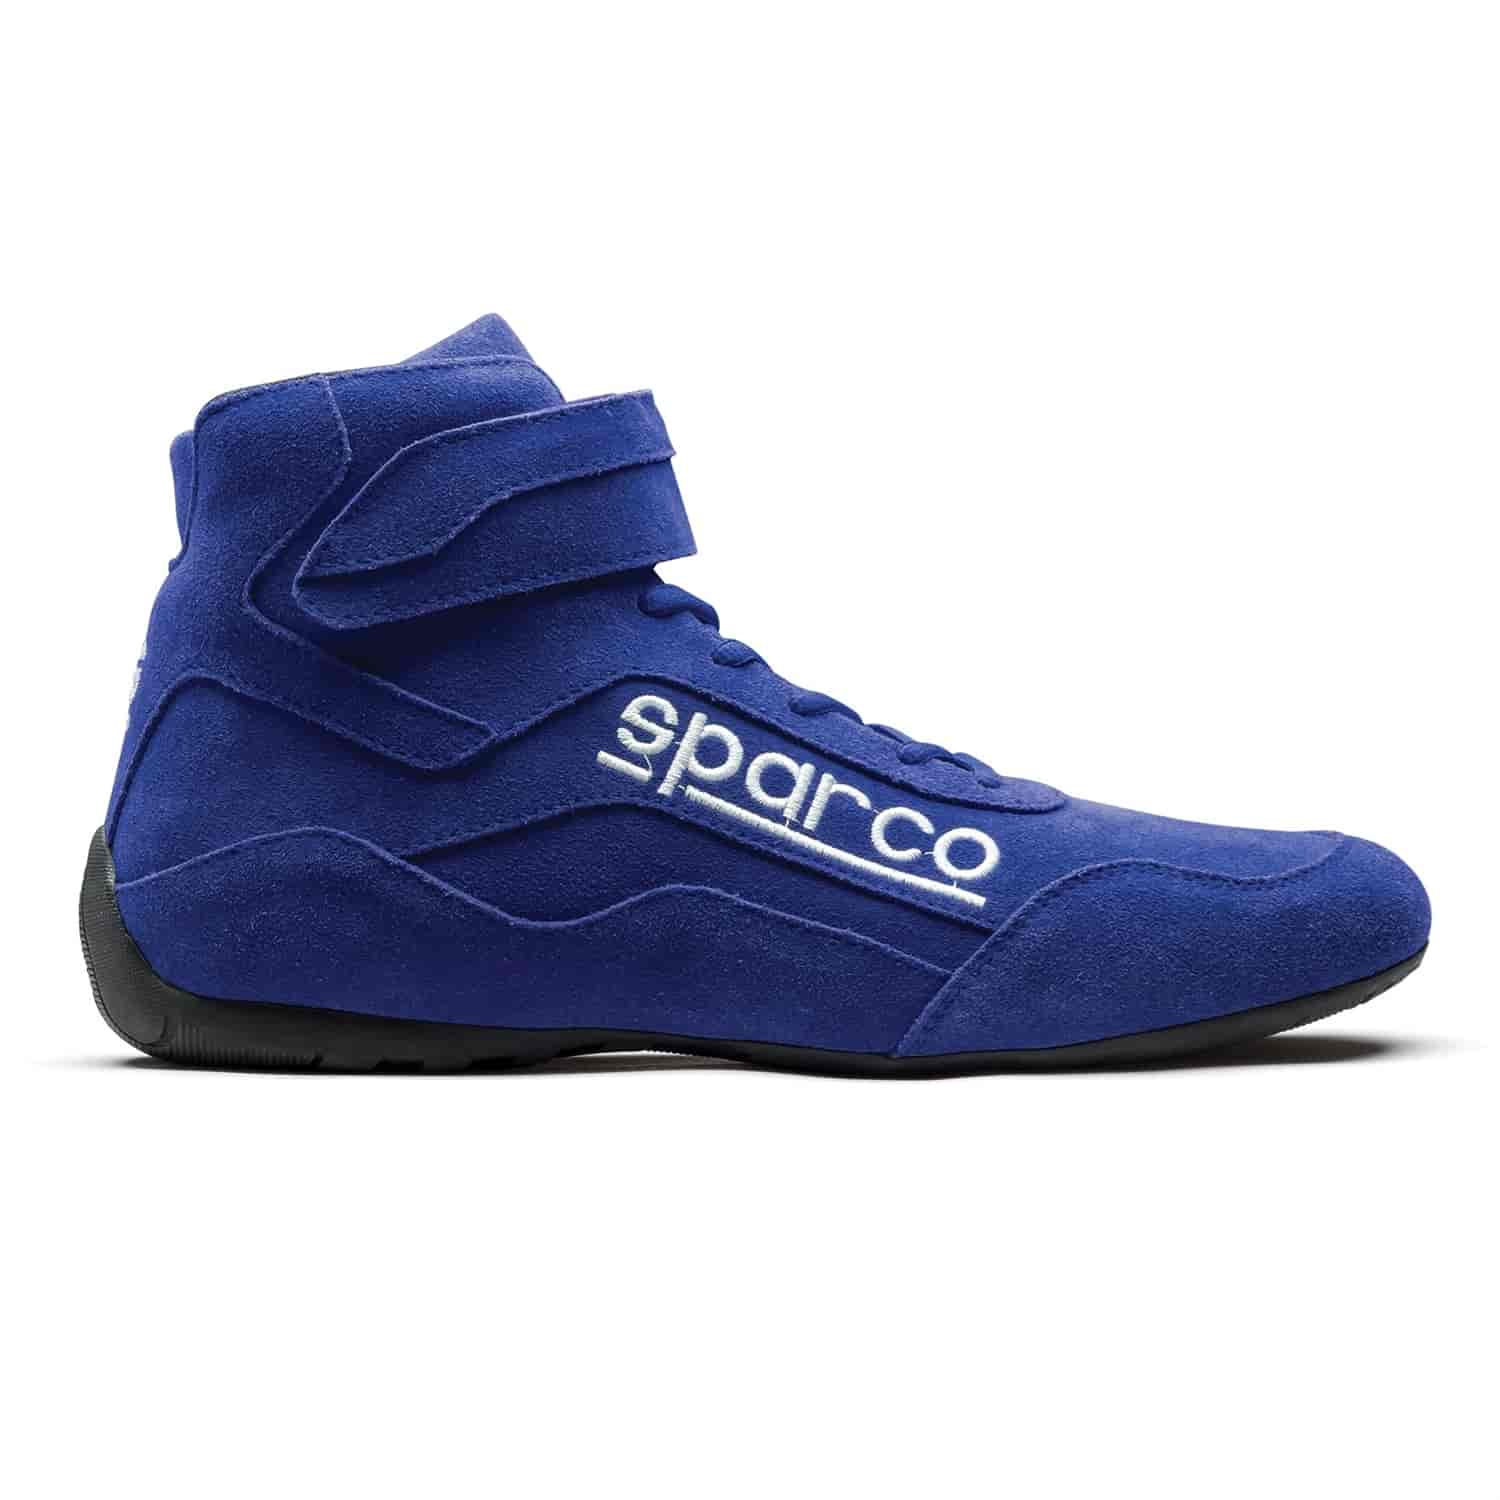 Race 2 Shoe Size 10.5 - Blue